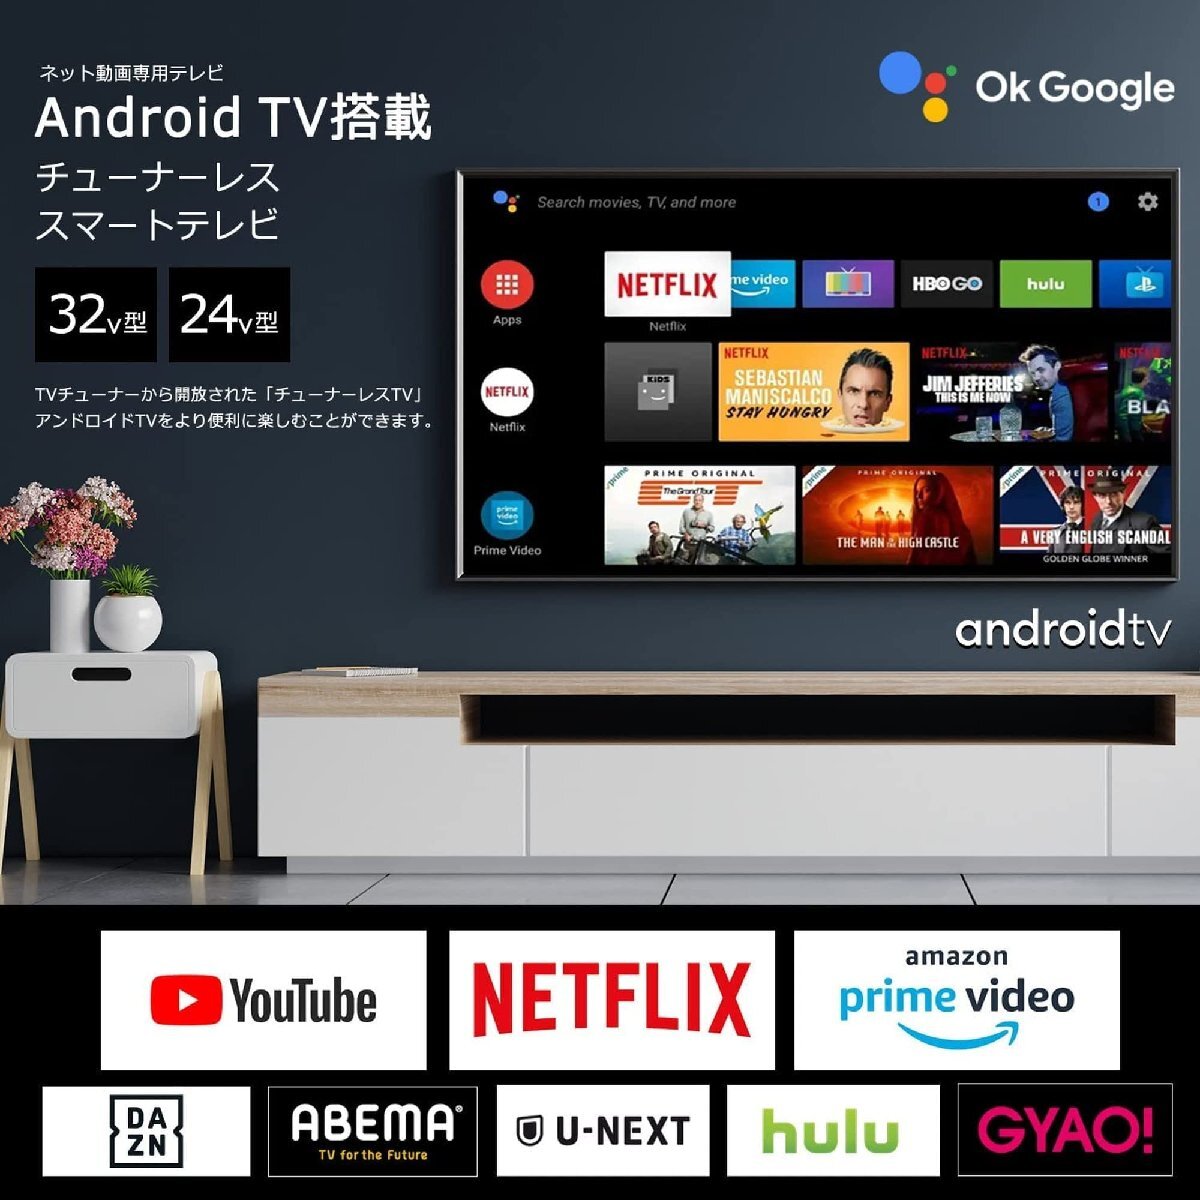 [Android TV] チューナーレスTV 24V型 スマートテレビ ネット動画対応 (VOD) 24インチ VAパネル [24型チューナーレス_画像2